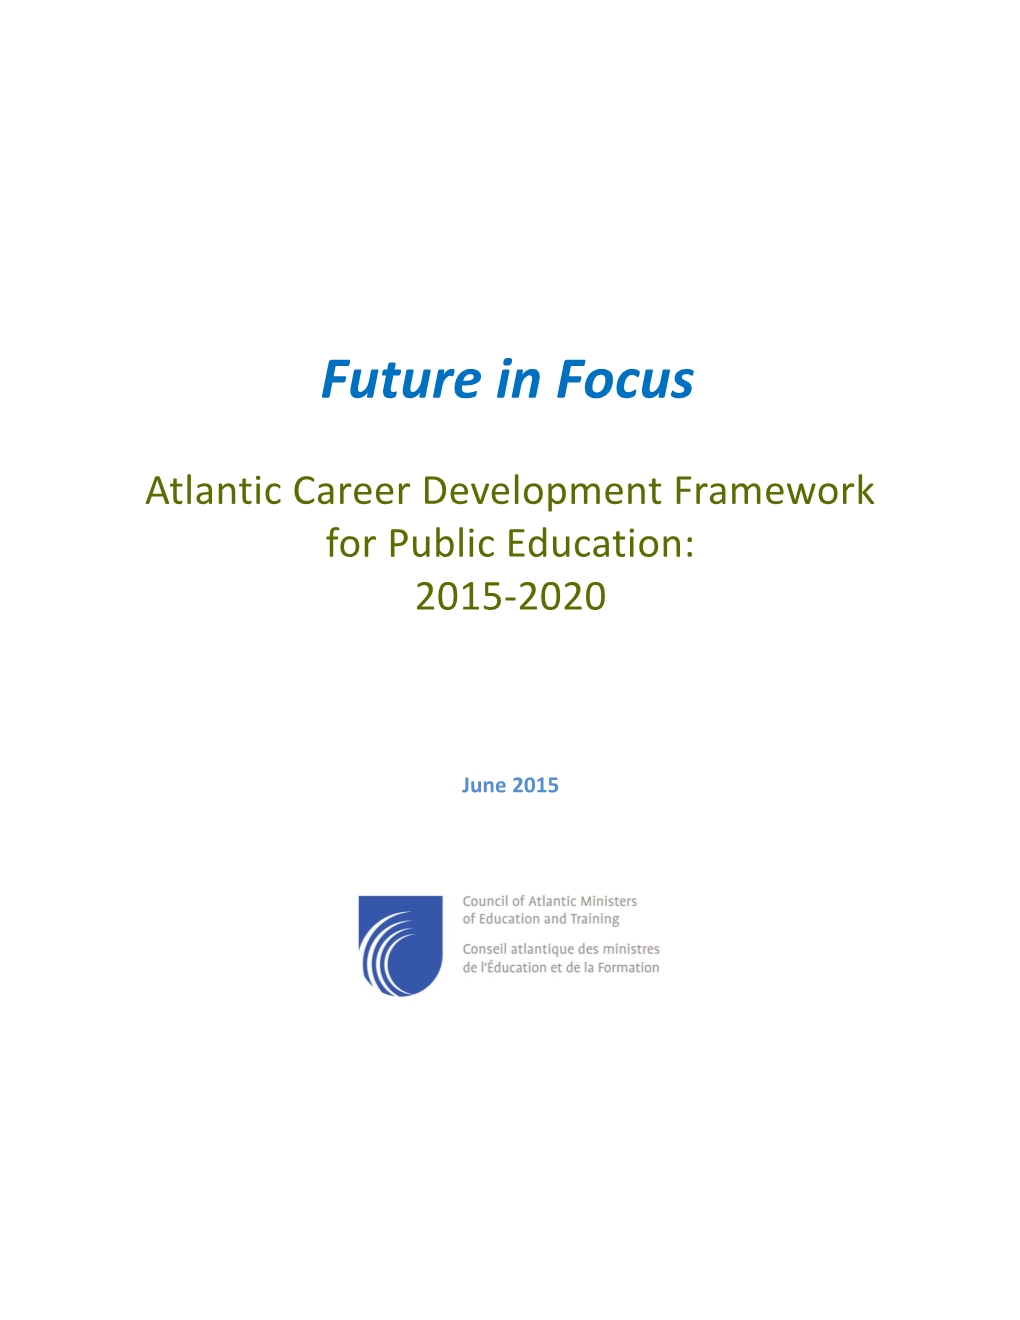 Atlantic Career Development Framework